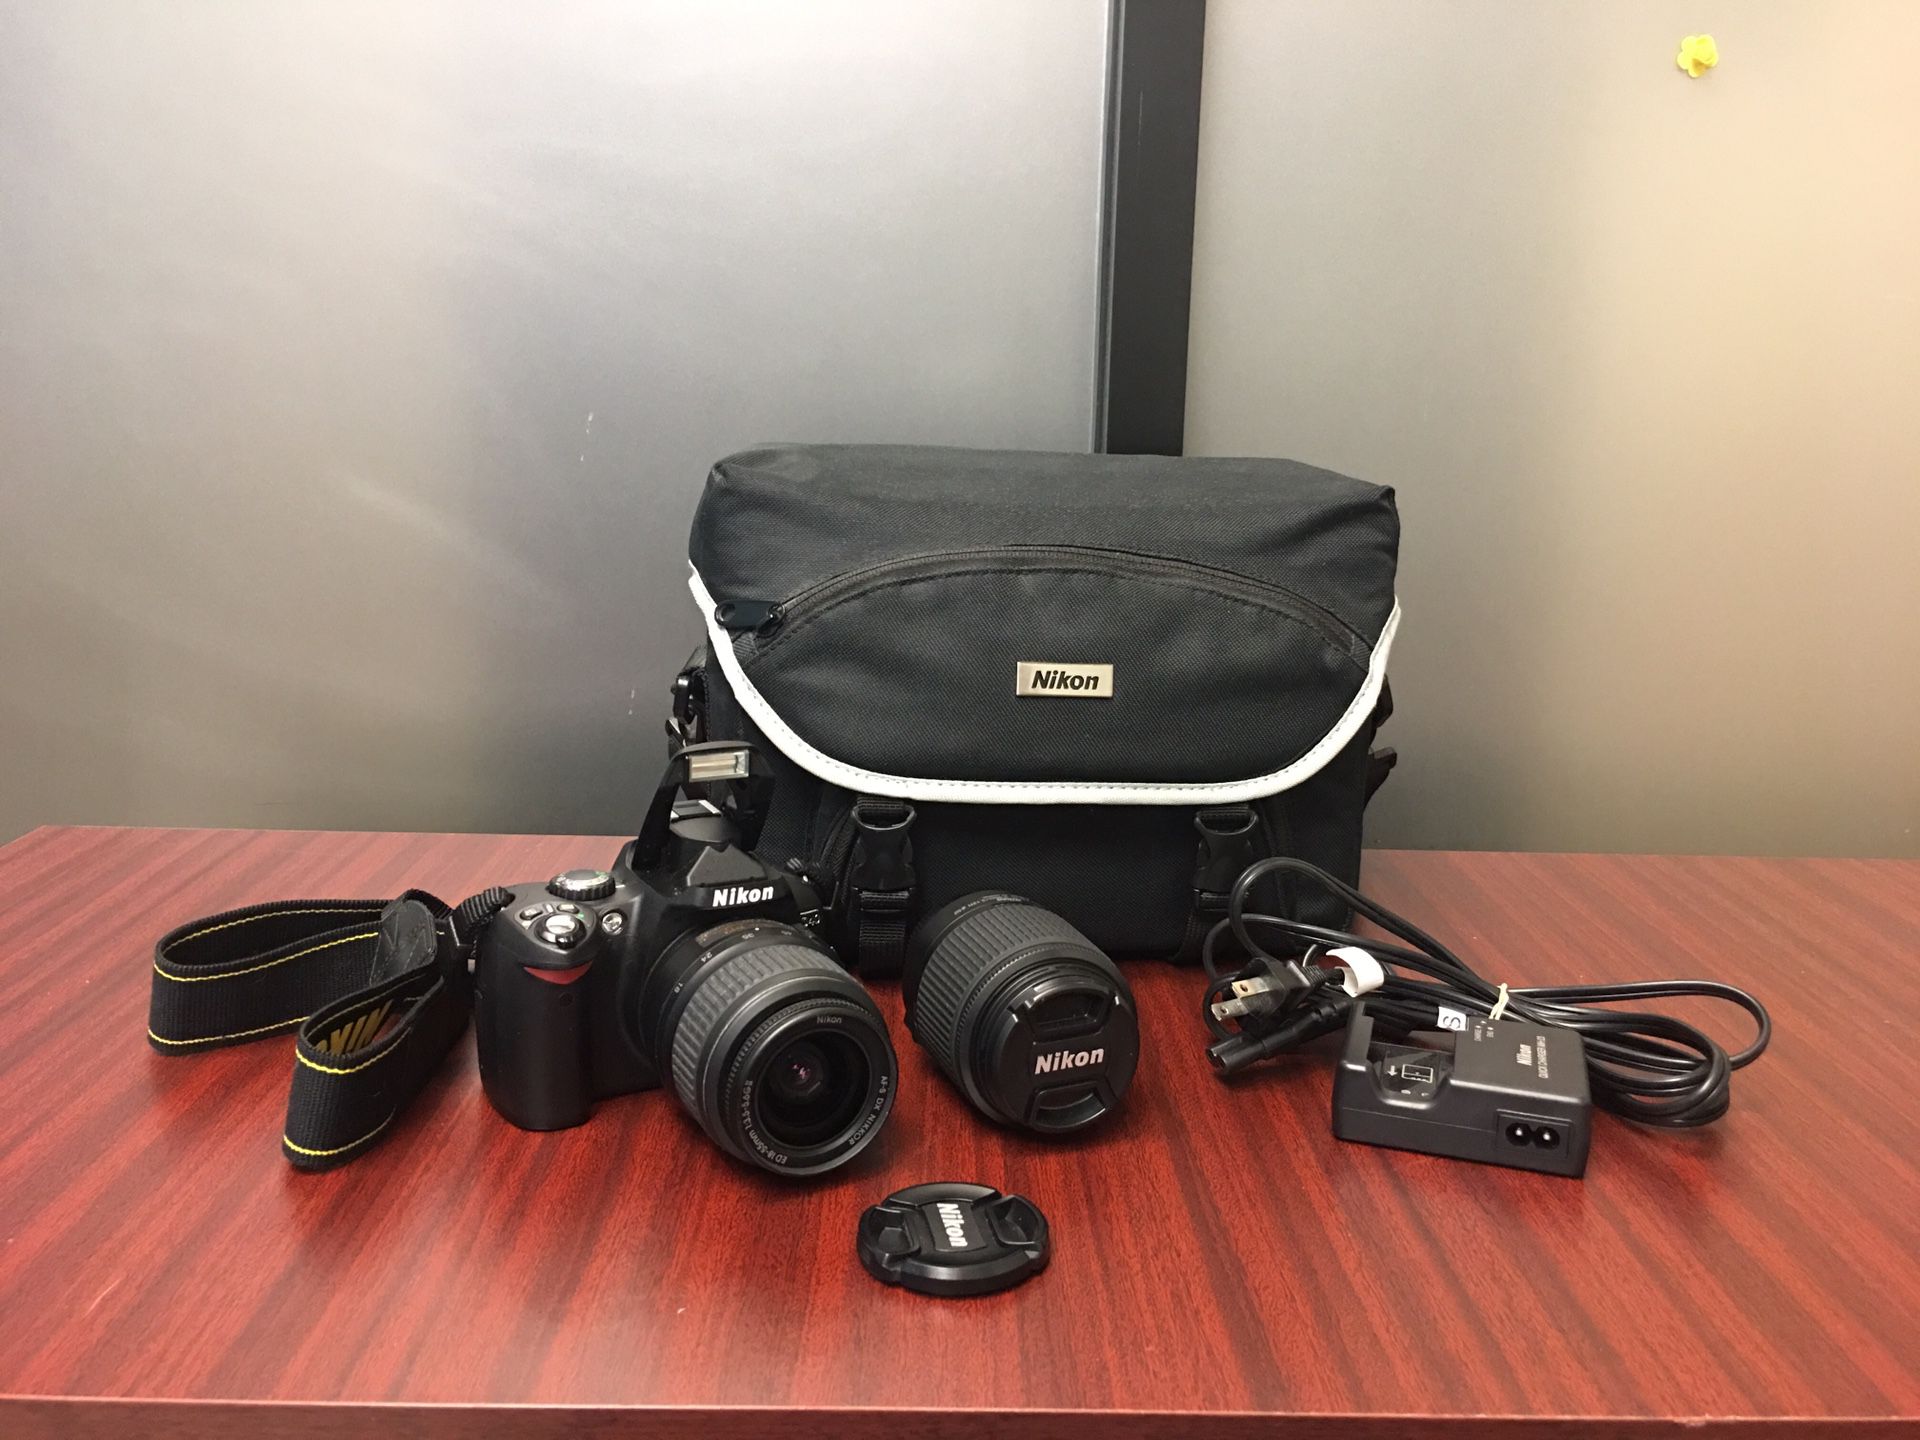 Nikon D40 DSLR camera set